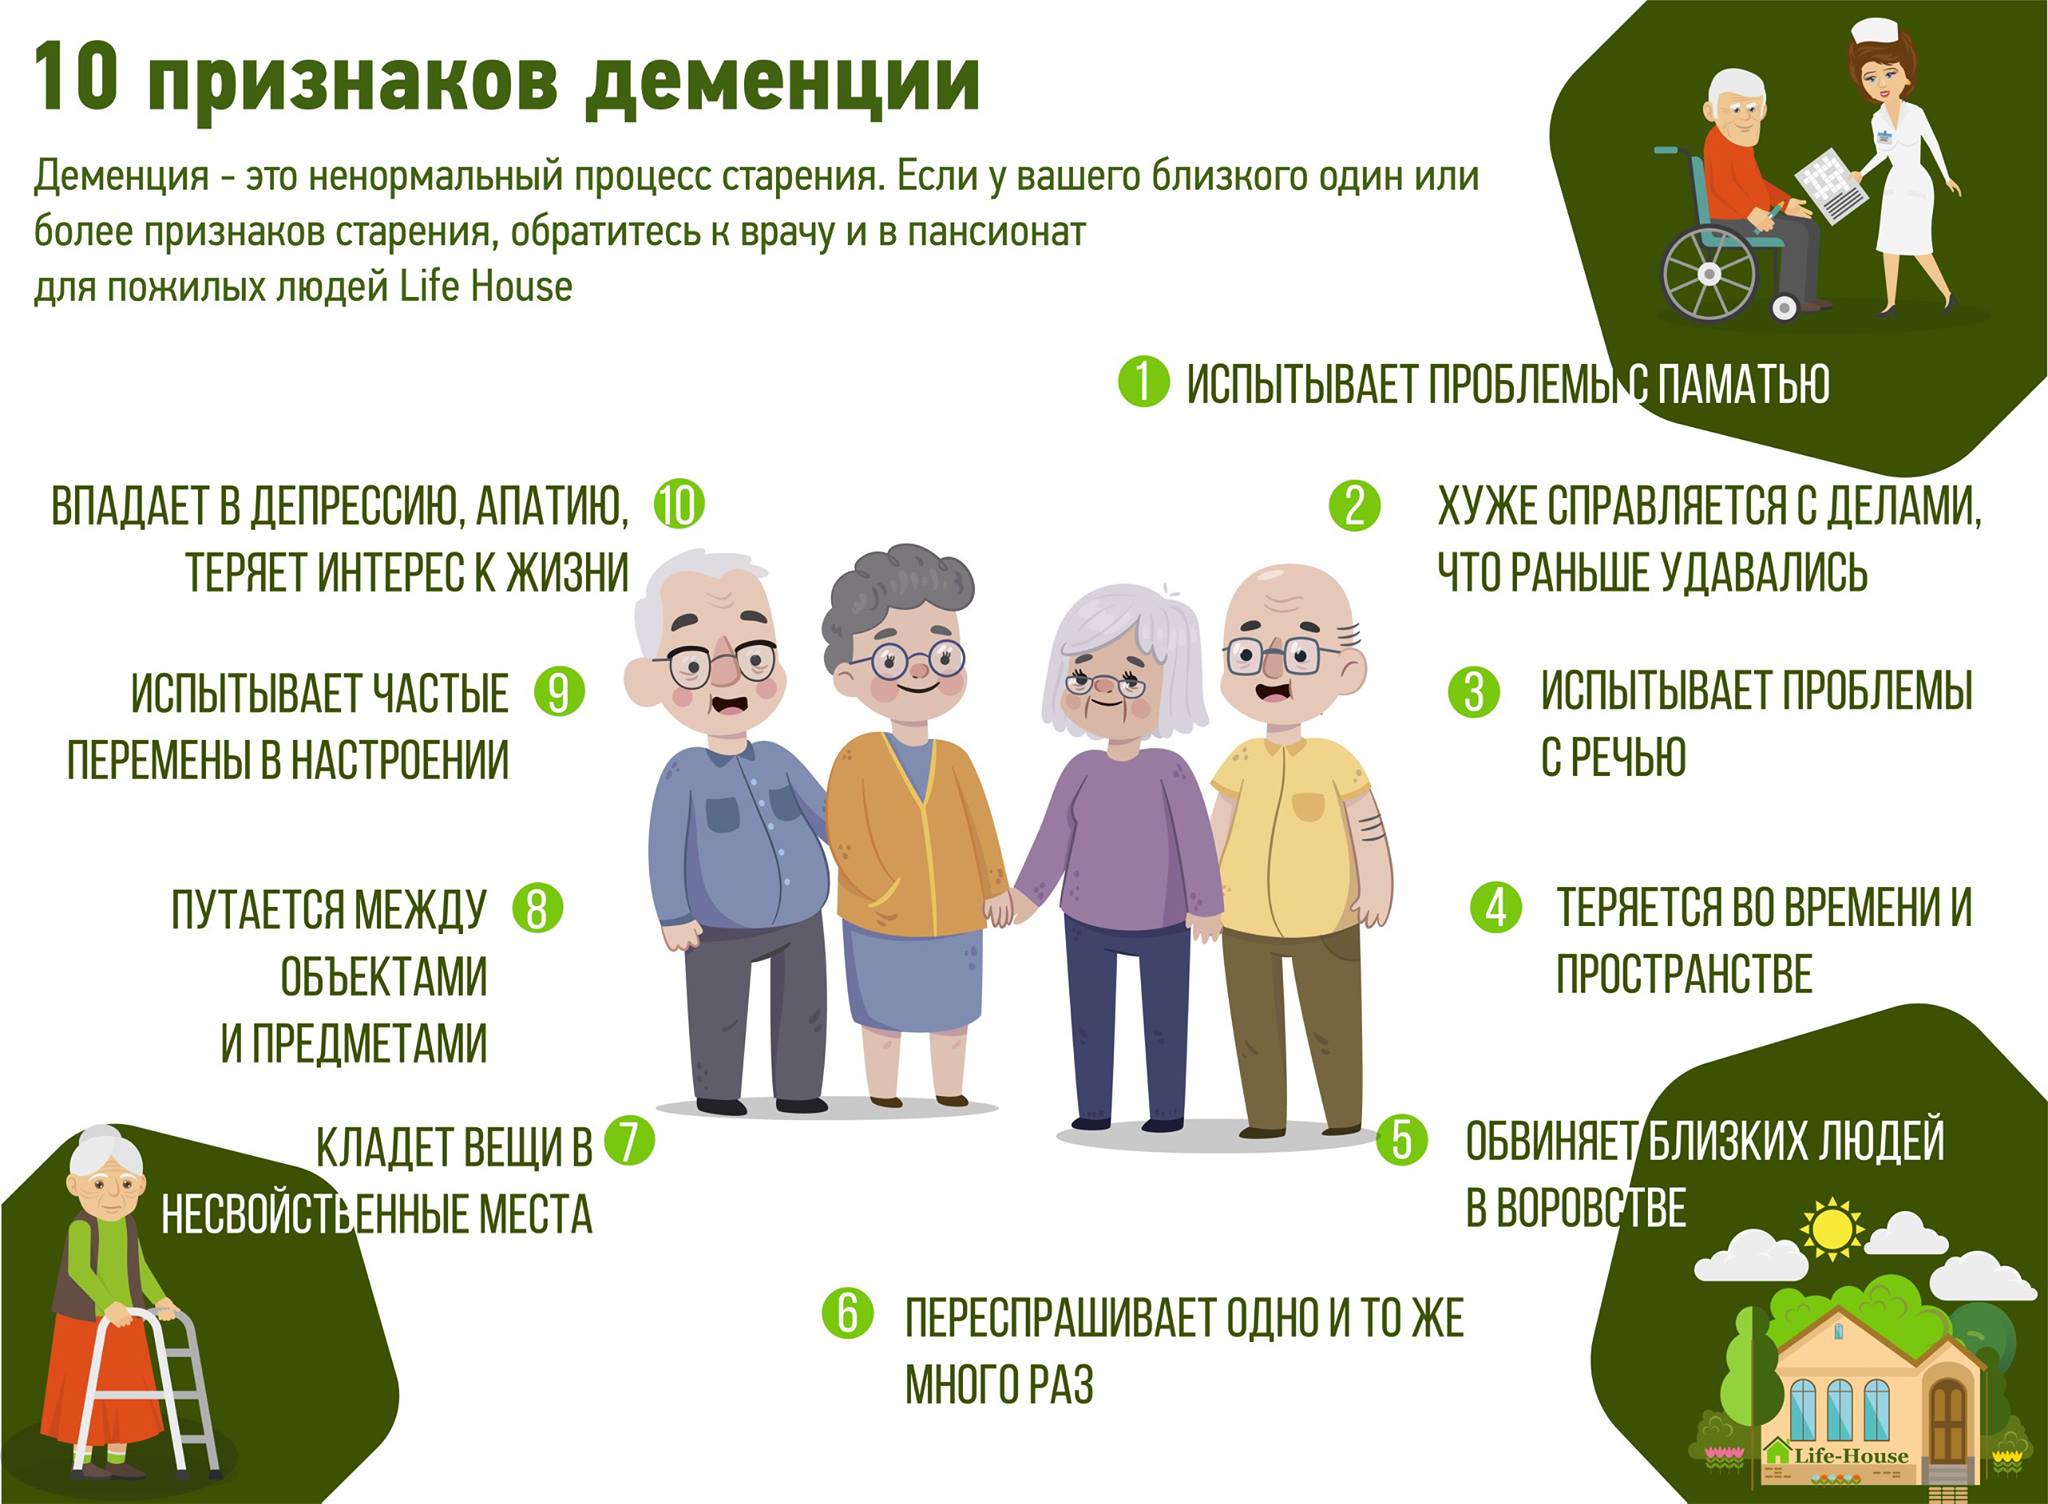 Деменция у пожилых людей, симптомы и лечение